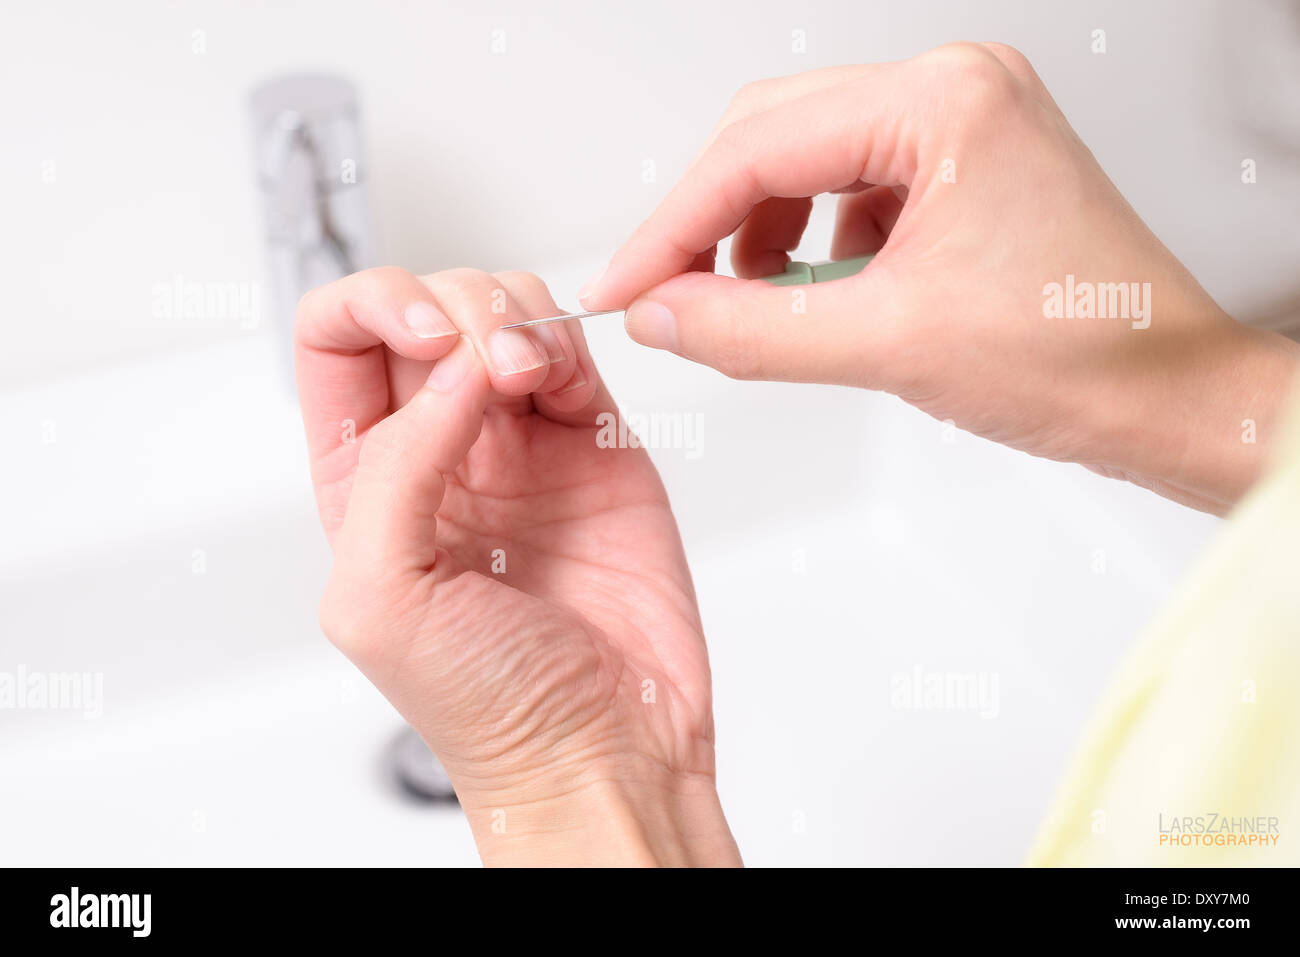 Frau, die Gestaltung und Reinigung ihrer Nagelhaut auf ihre Fingernägel in einem Gesundheit, Hautpflege und Schönheit-Konzept mit einem spitzen Werkzeug Stockfoto